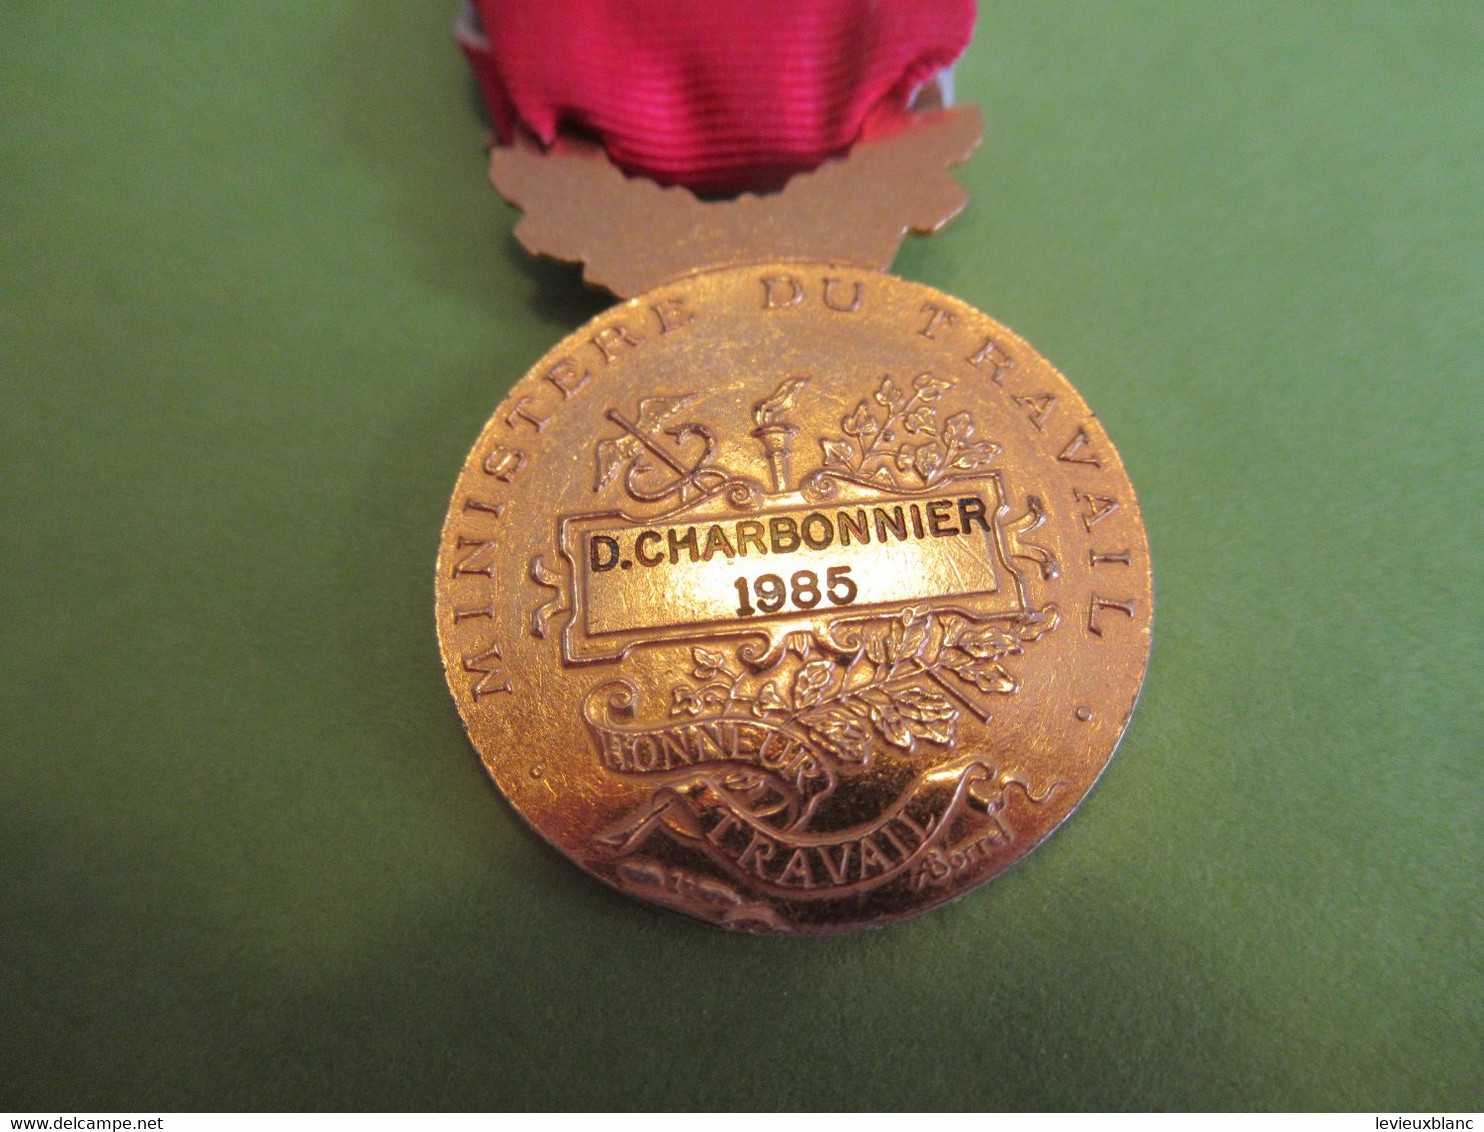 4 Médailles du Travail/ RF/ avec Rosettes /dont 2 avec palmes/Cochin/Charbonnier/1962-1976-1984-1985    MED387